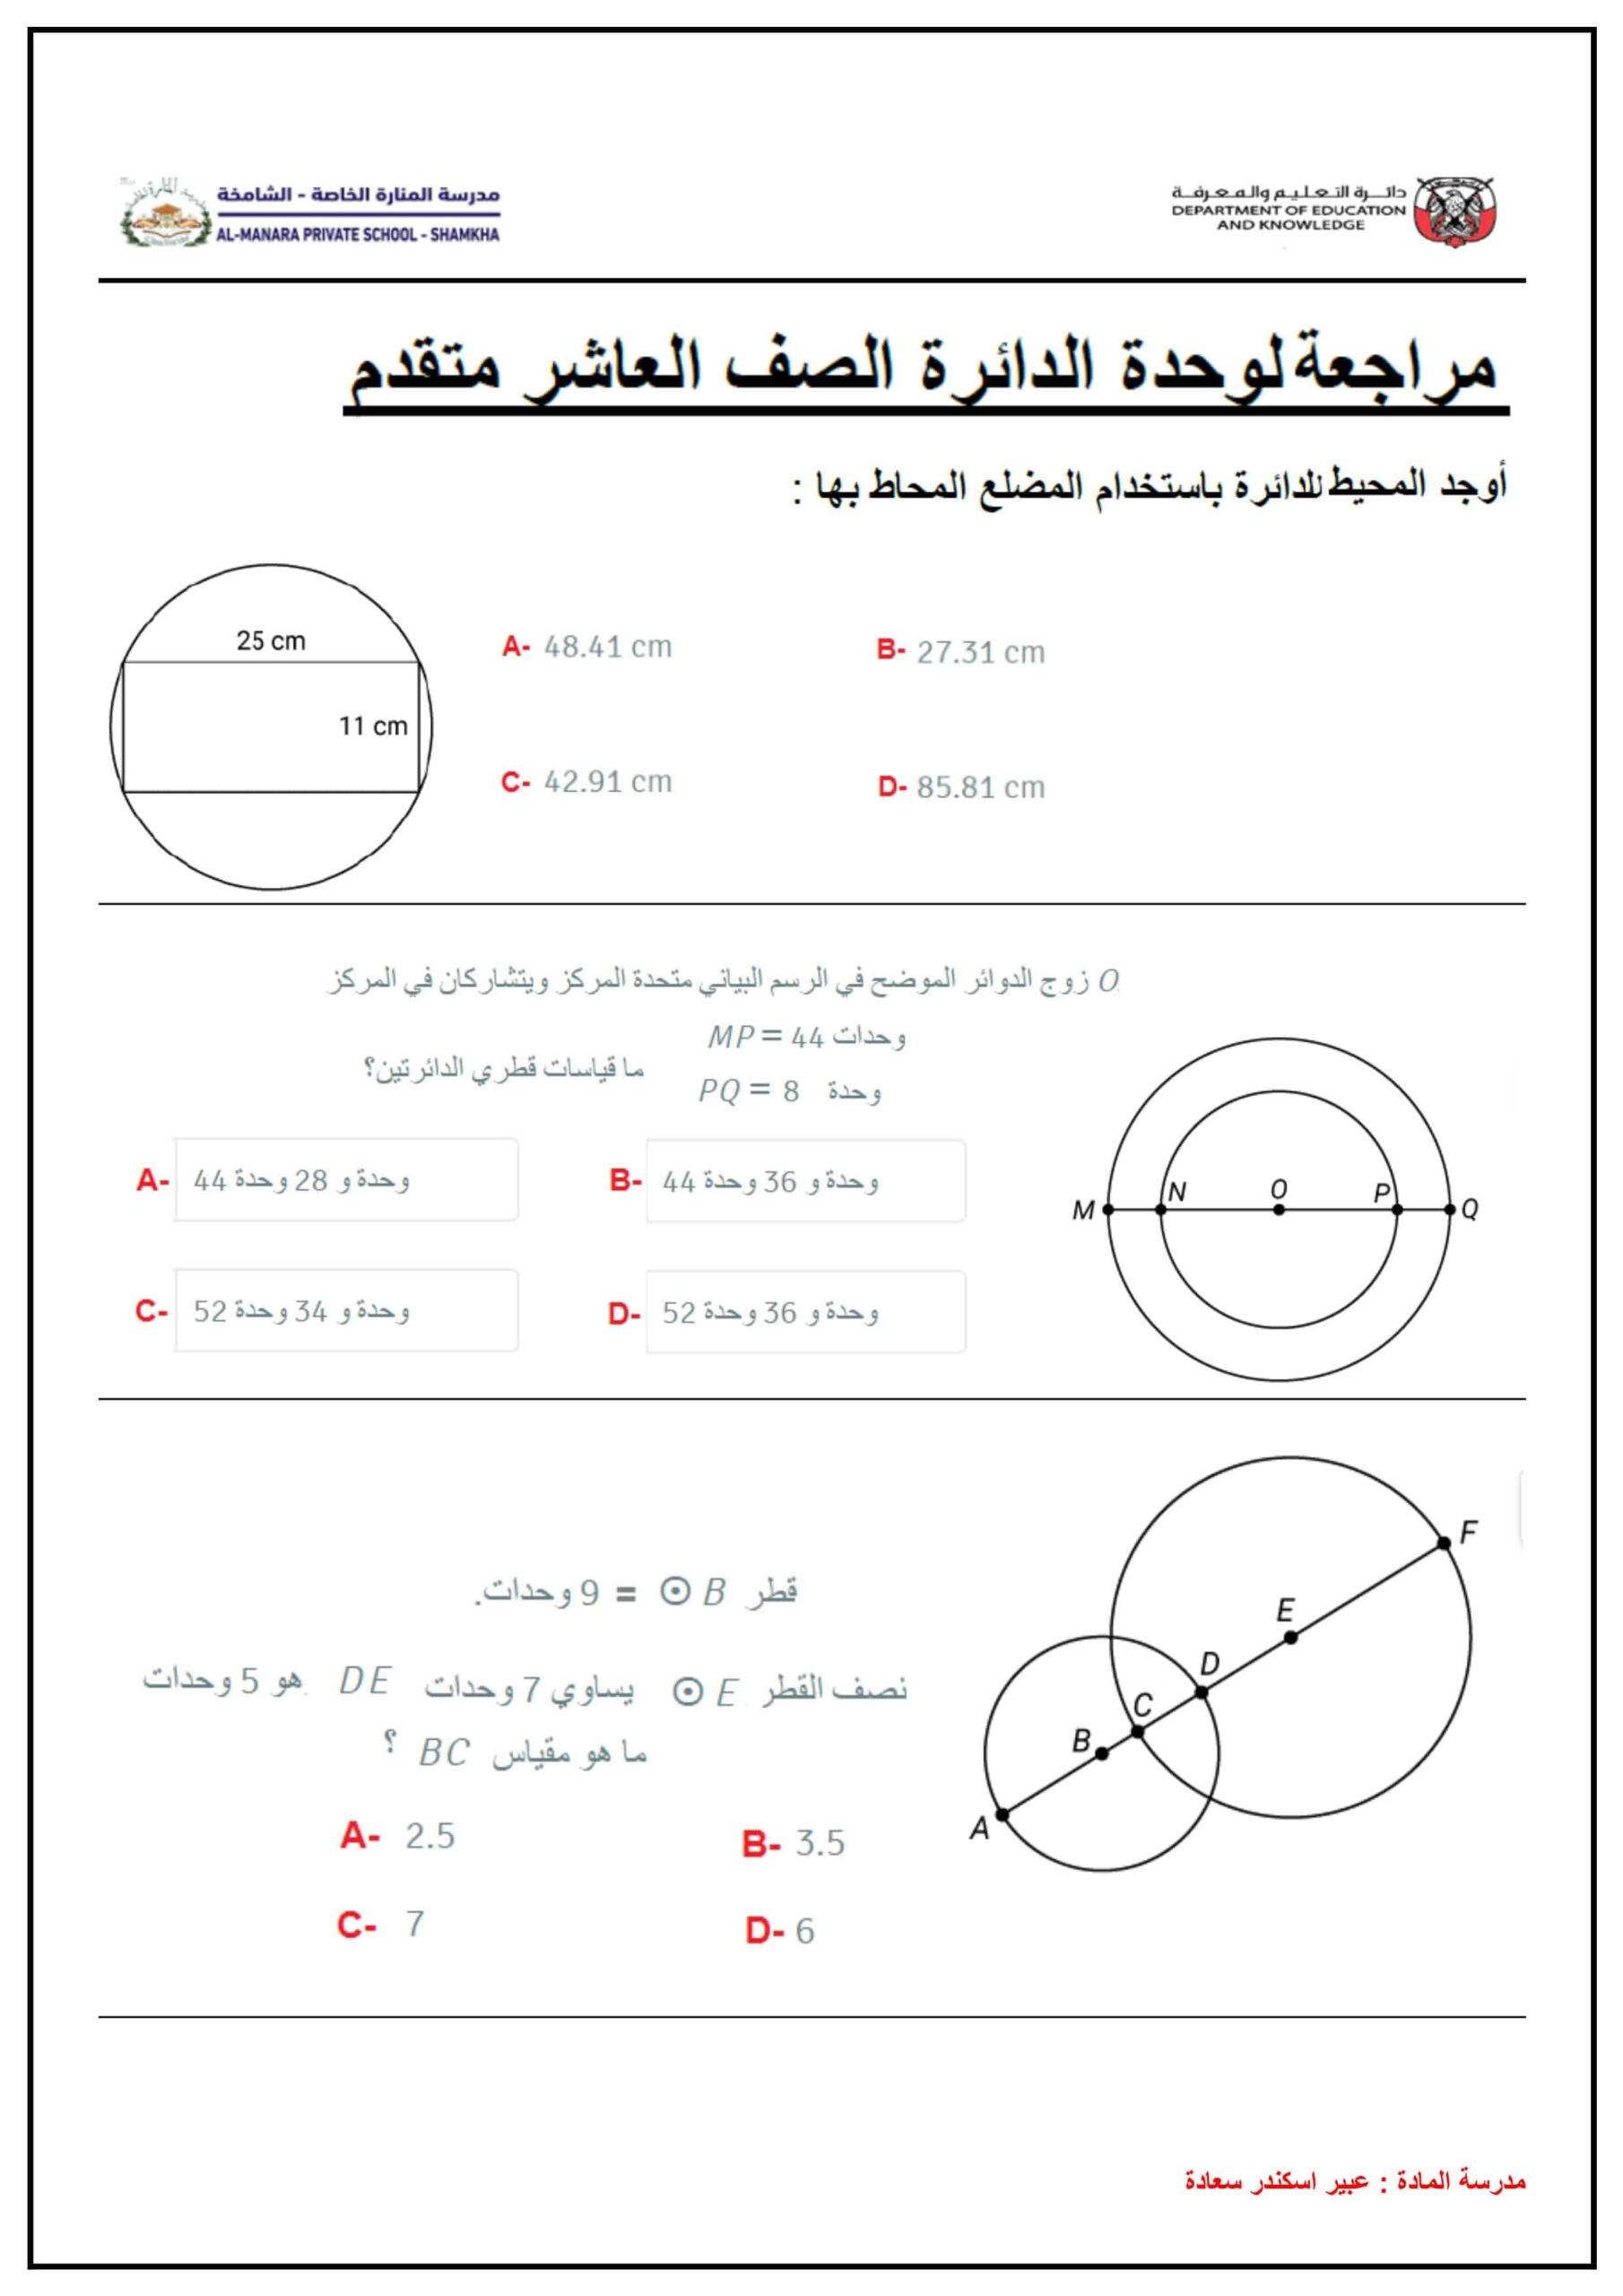 حل أوراق عمل مراجعة الدائرة الرياضيات المتكاملة الصف العاشر